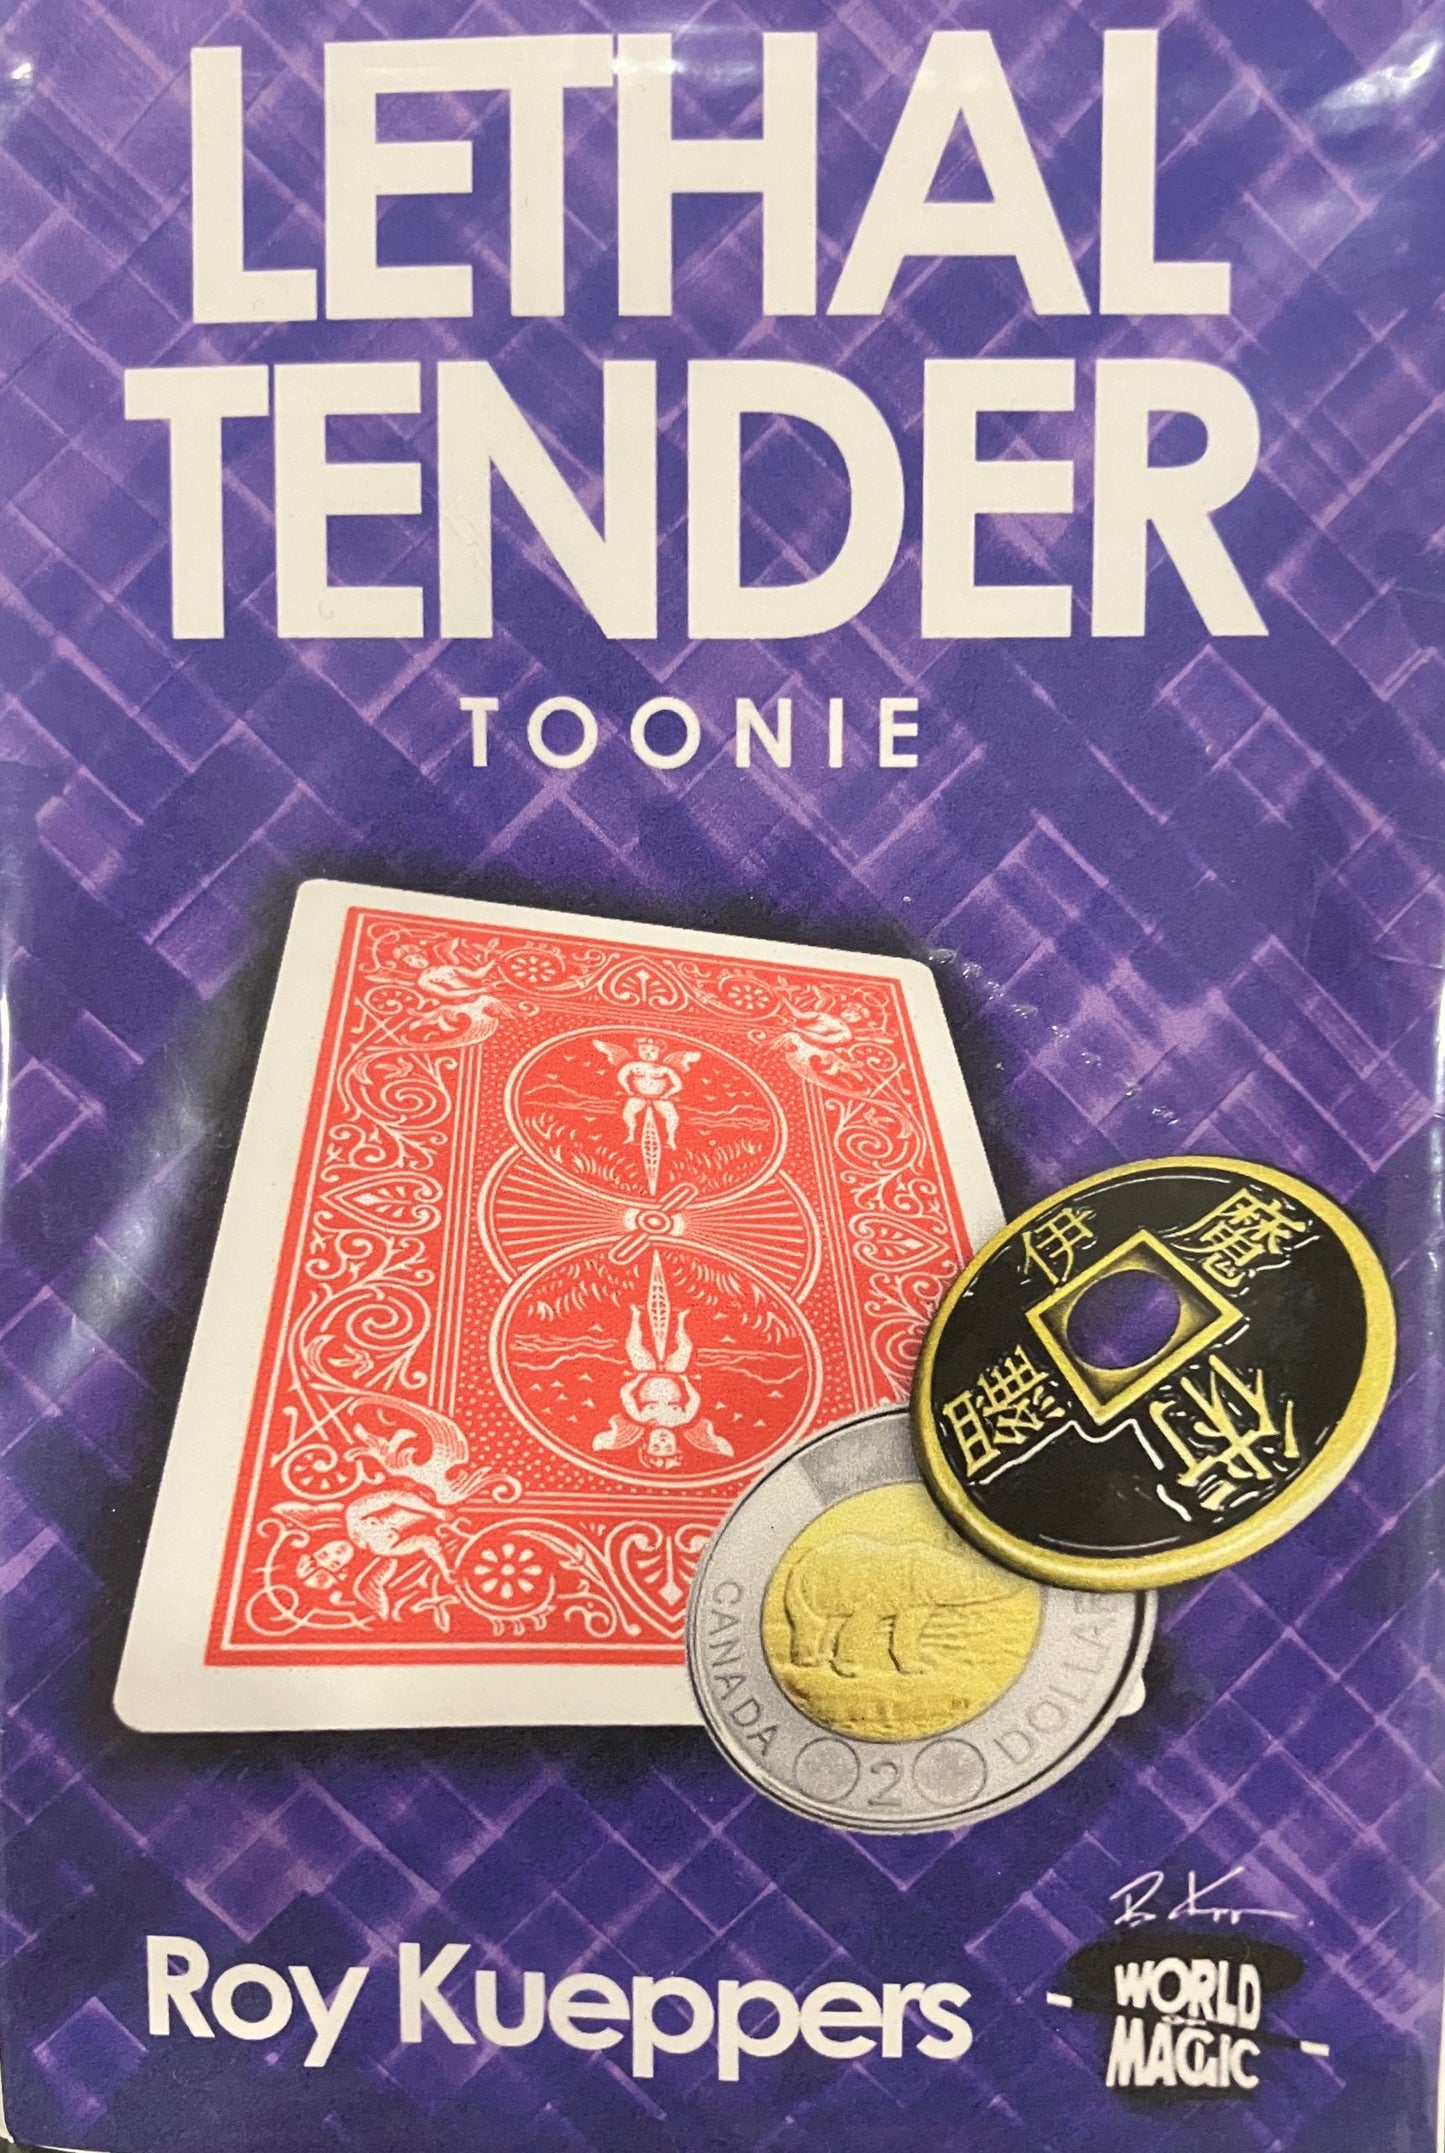 Lethal Tender Toonie - Canadian